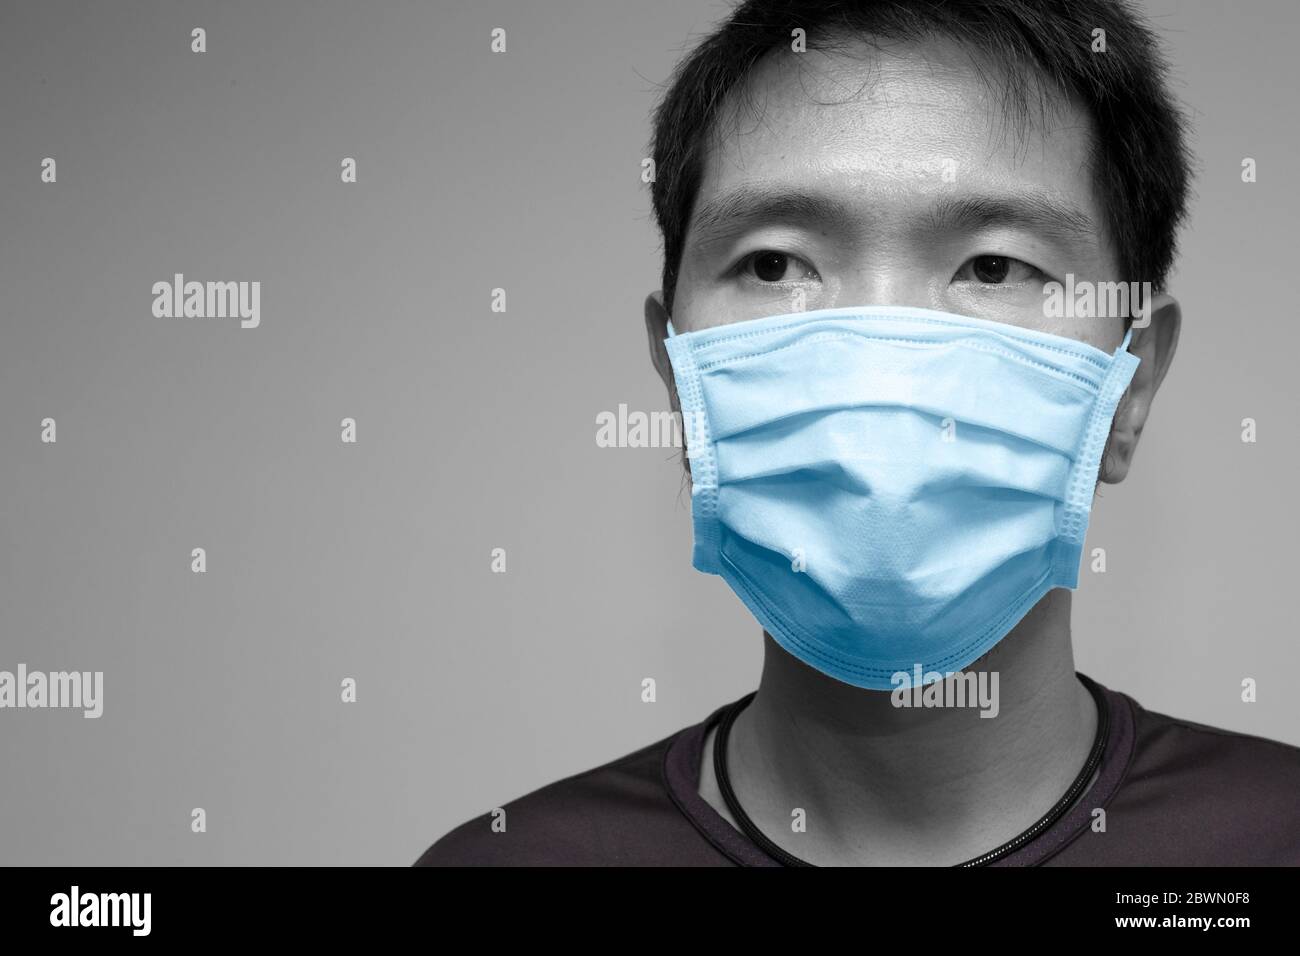 Asiatische chinesische Mann trägt Gesichtsmaske oder Einweg-Schutzschild Tuch Abdeckung Studio Kopf geschossen mit Platz für Text. Stockfoto